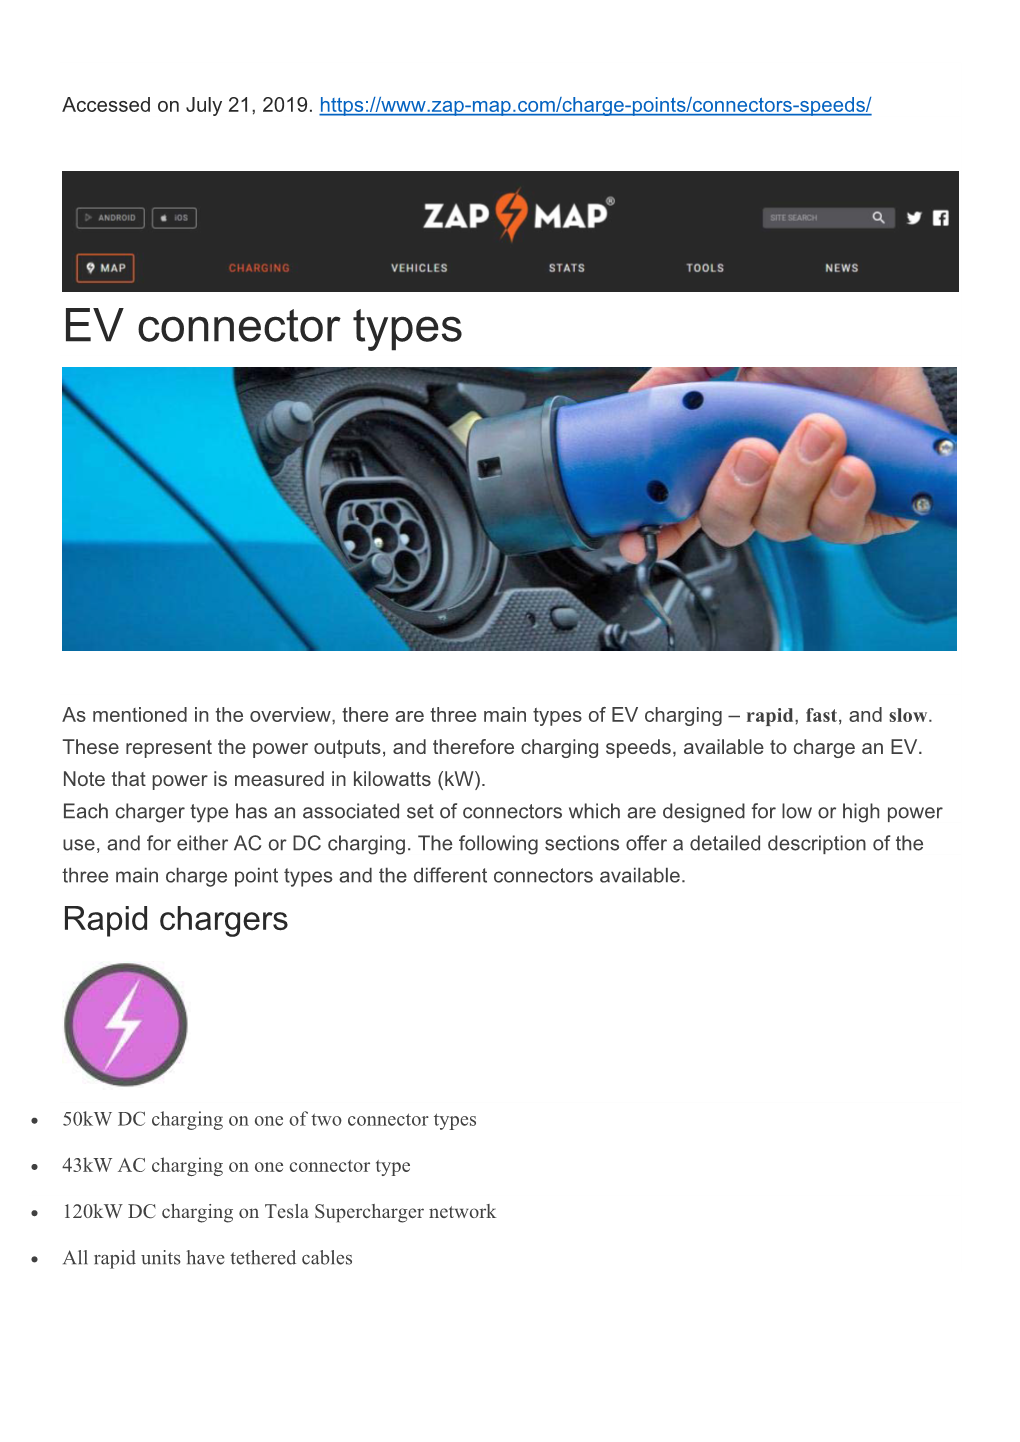 EV Connector Types